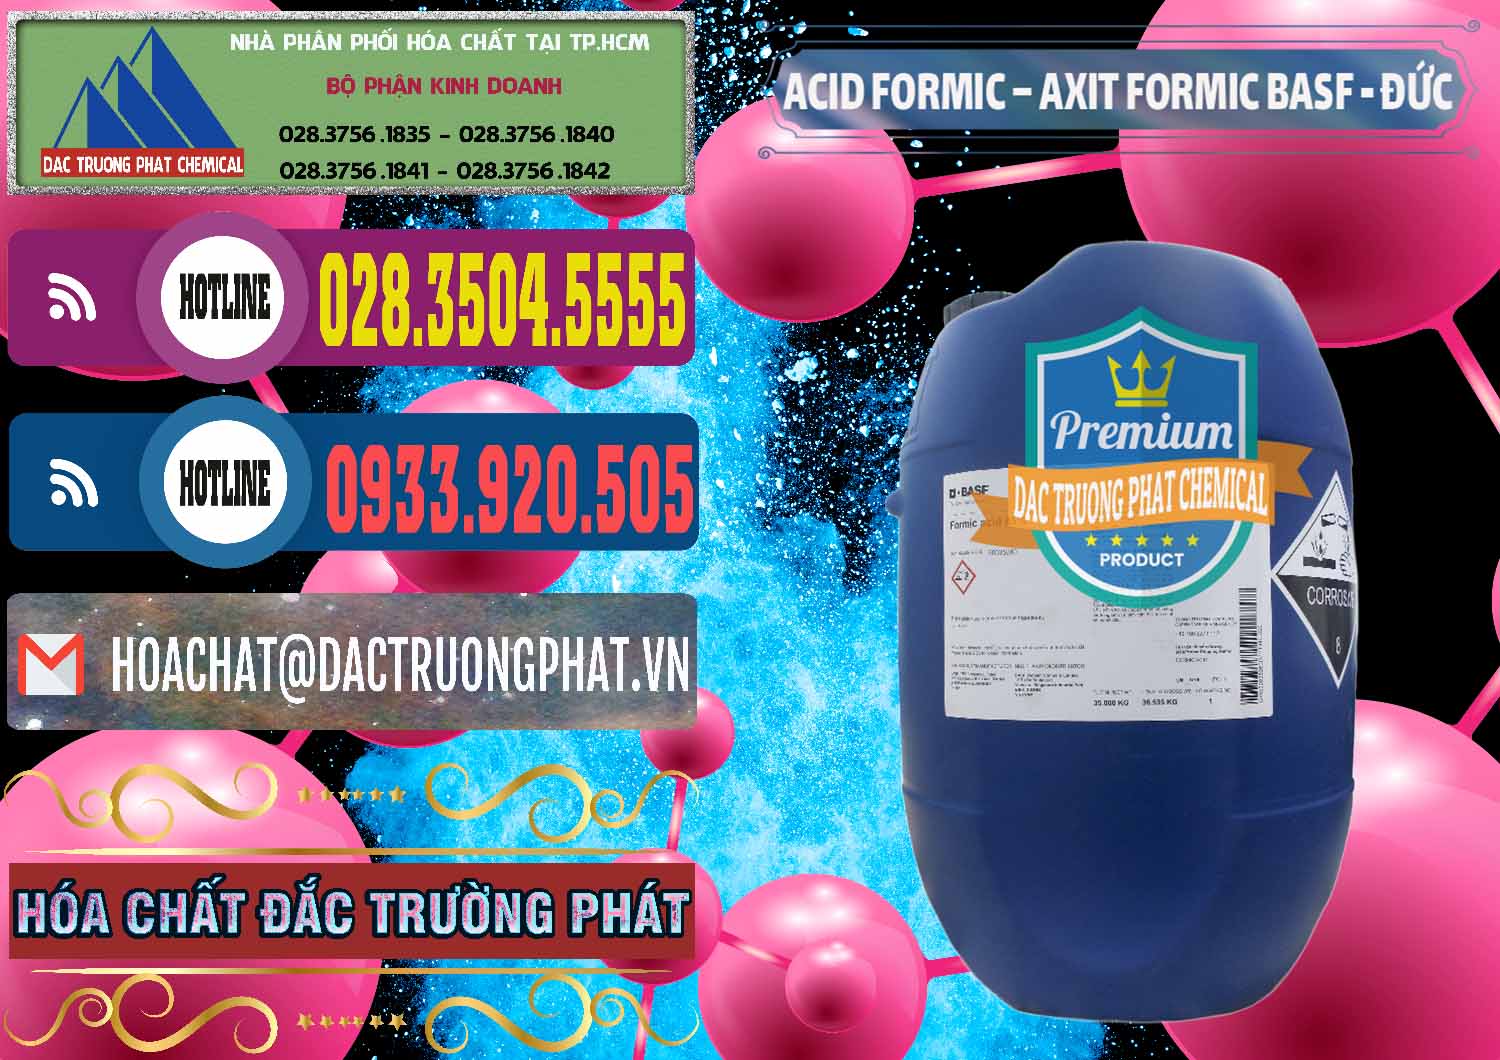 Chuyên phân phối và bán Acid Formic - Axit Formic BASF Đức Germany - 0028 - Công ty phân phối _ bán hóa chất tại TP.HCM - muabanhoachat.com.vn